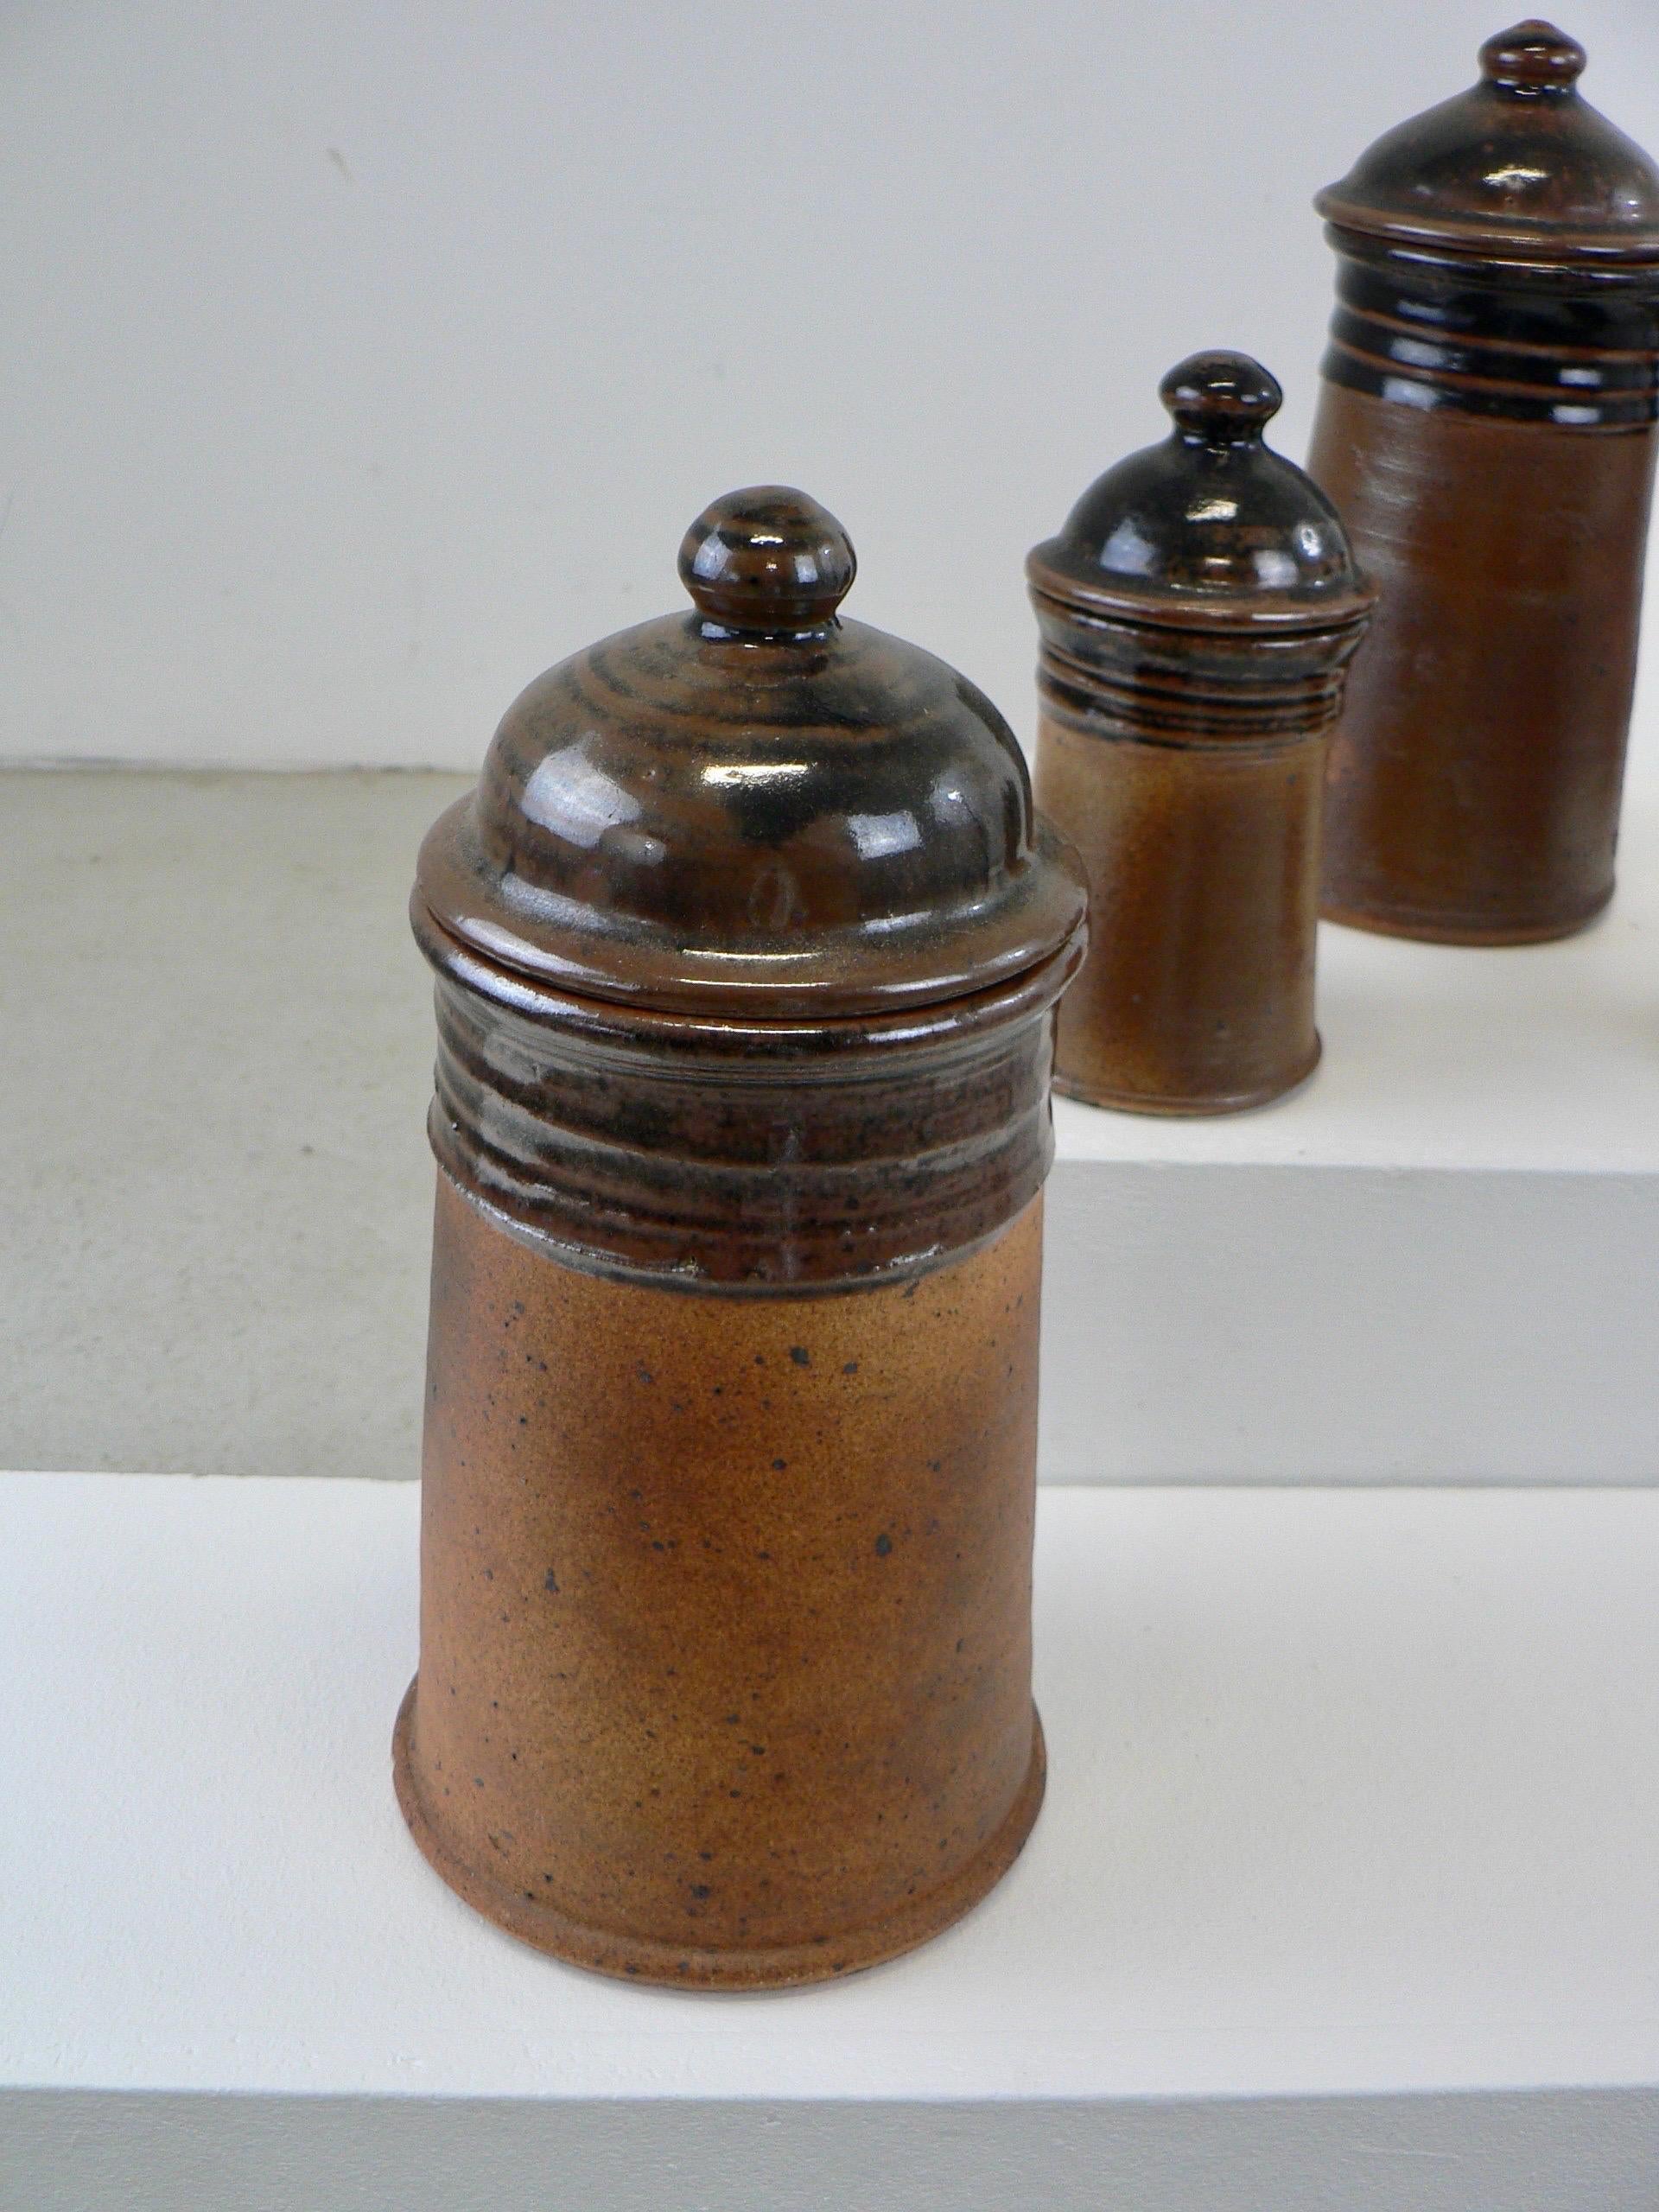 Un ensemble de cinq pots à épices avec leurs couvercles, fabriqués par Pierre Digan et Jeanette Stedman dans leur atelier de La Borne, en France, en 1970.

Tailles :
Hauteur : 24, 22, 16 et 15 cm.
Diamètre : 12, 11 et 8 cm.
